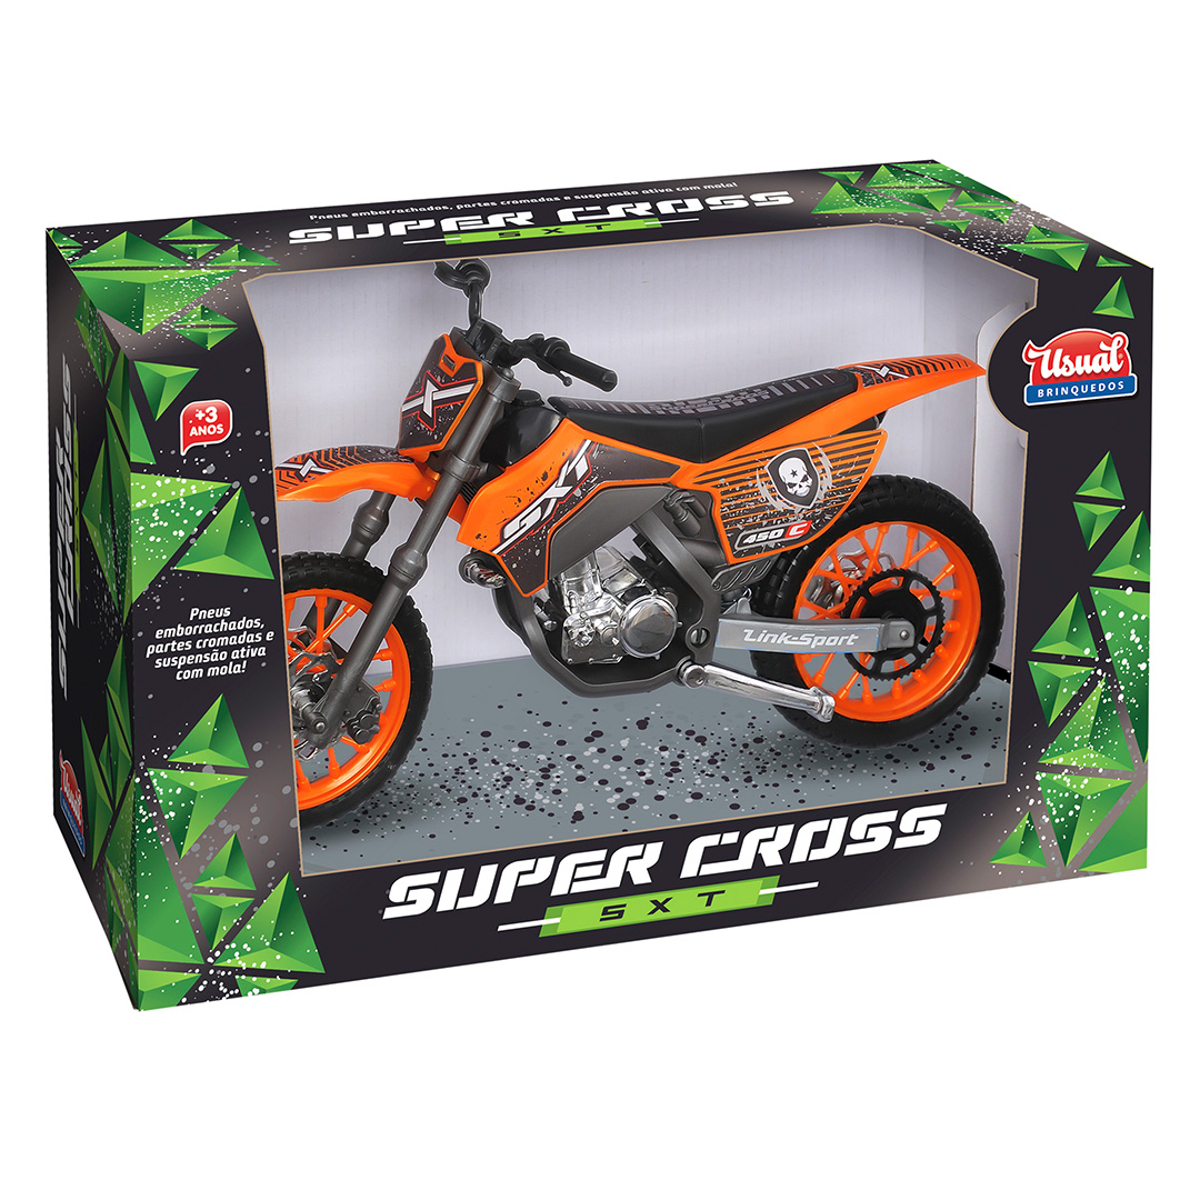 Moto de Corrida Super Cross sxt Roxa Usual Brinquedos no Shoptime